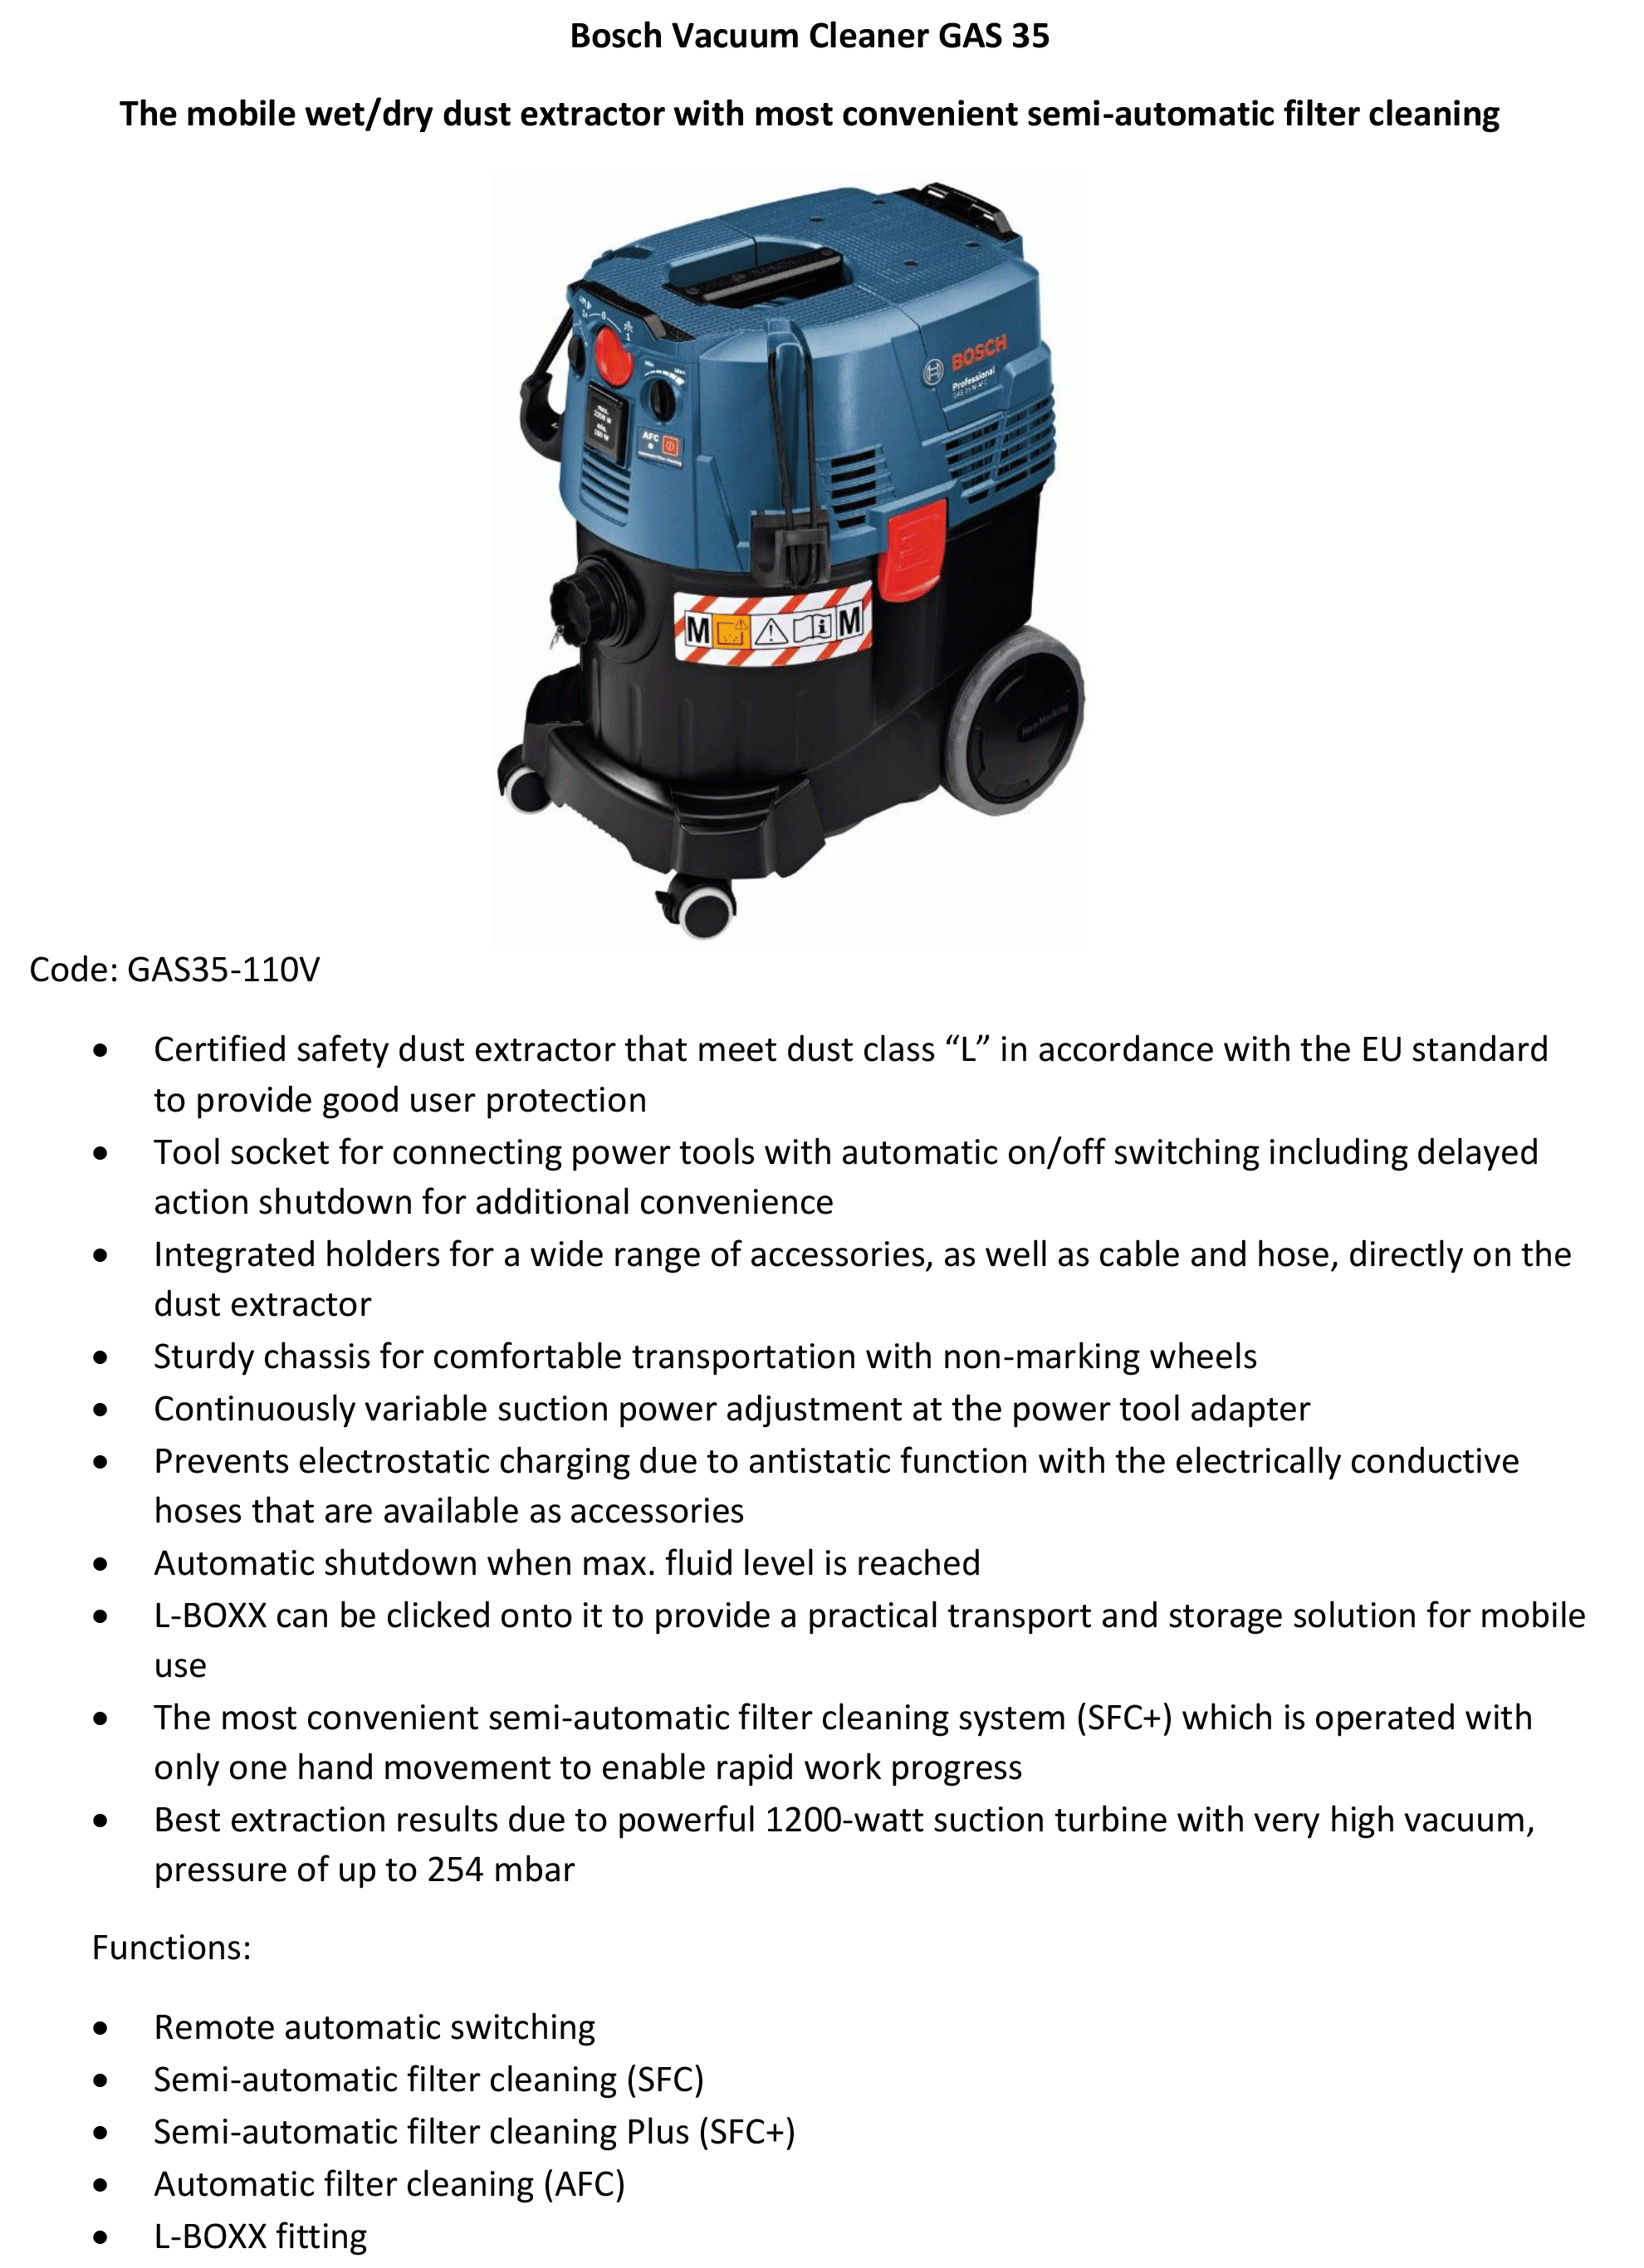 Bosch-Vacuum-Cleaner-GAS-35-info.gif#ass